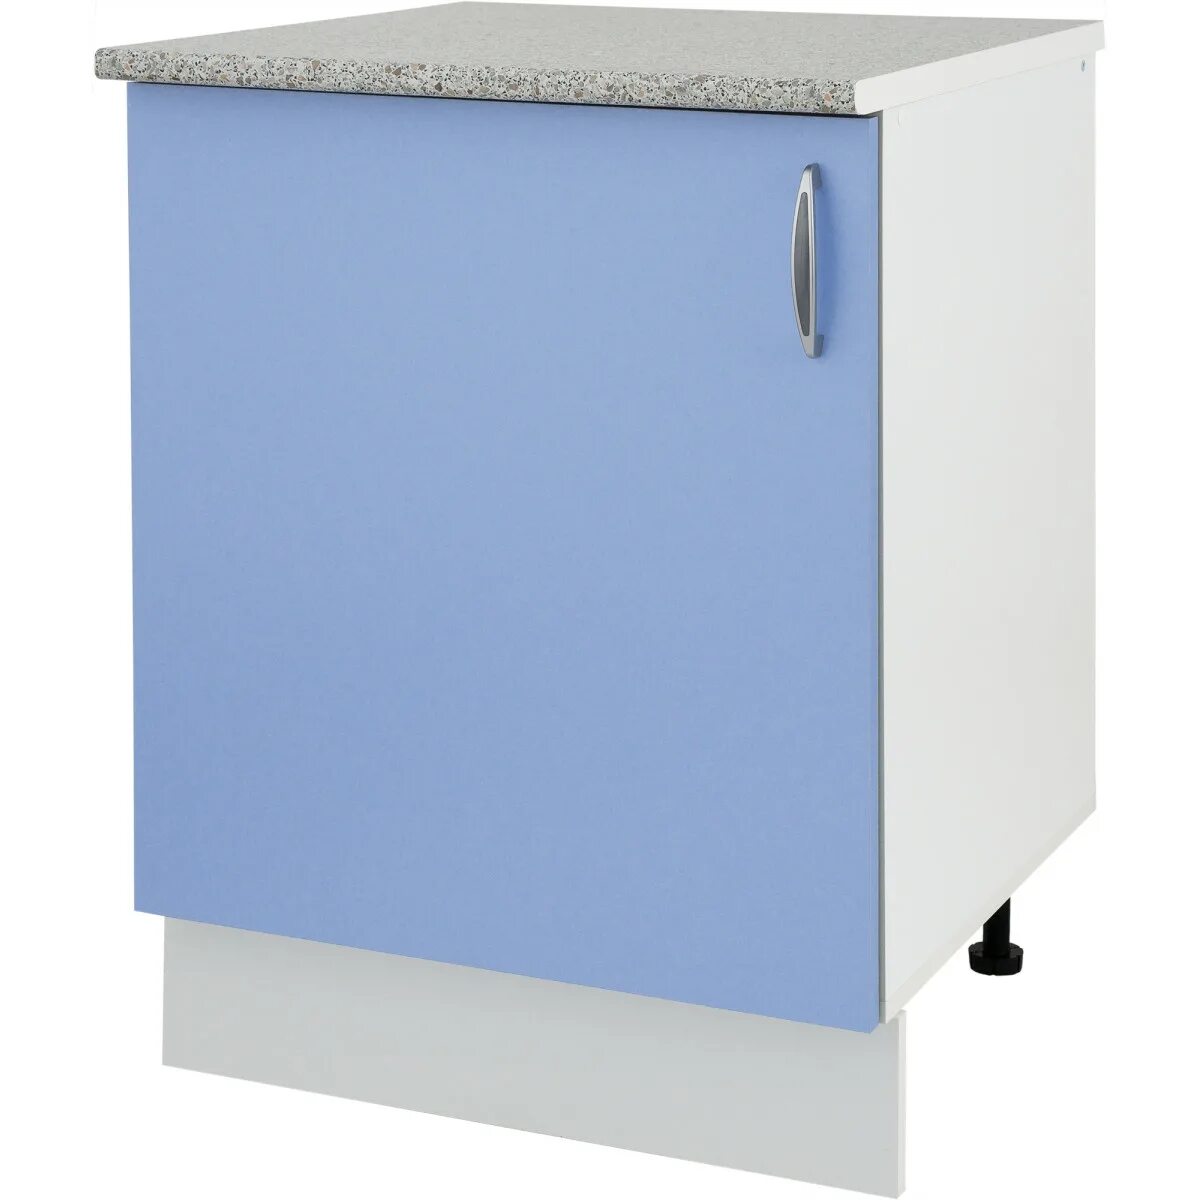 Купить шкафы для кухни в леруа. Шкаф напольный Лагуна СП 85х80 см цвет голубой. Кухня Лагуна Леруа Мерлен. Шкаф напольный Лагуна 60 белый. Шкаф напольный «Лагуна д».